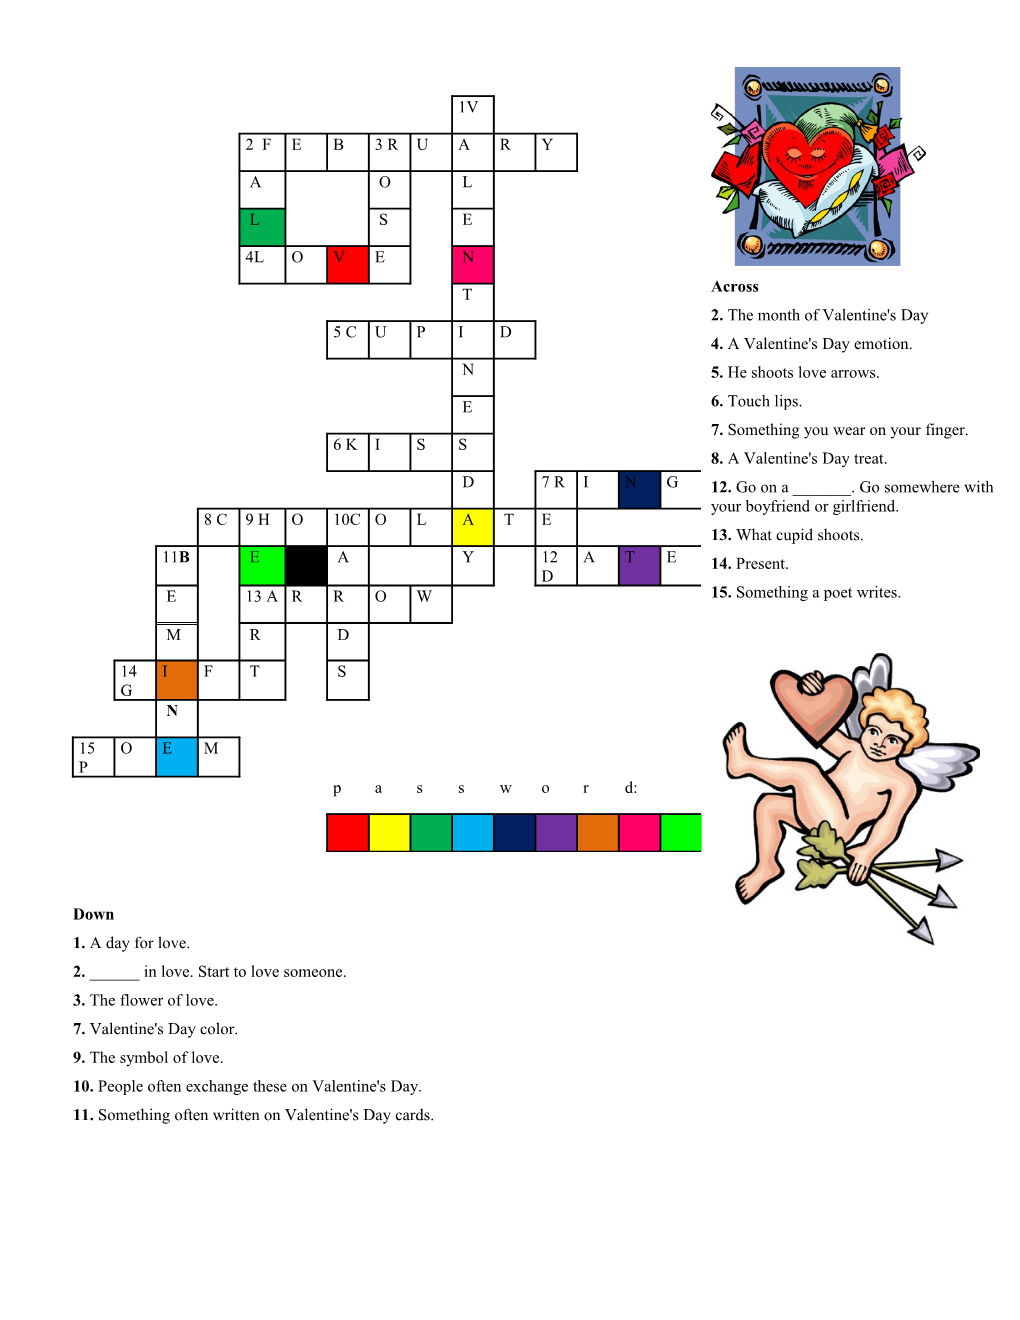 Valentine's Day Crossword II